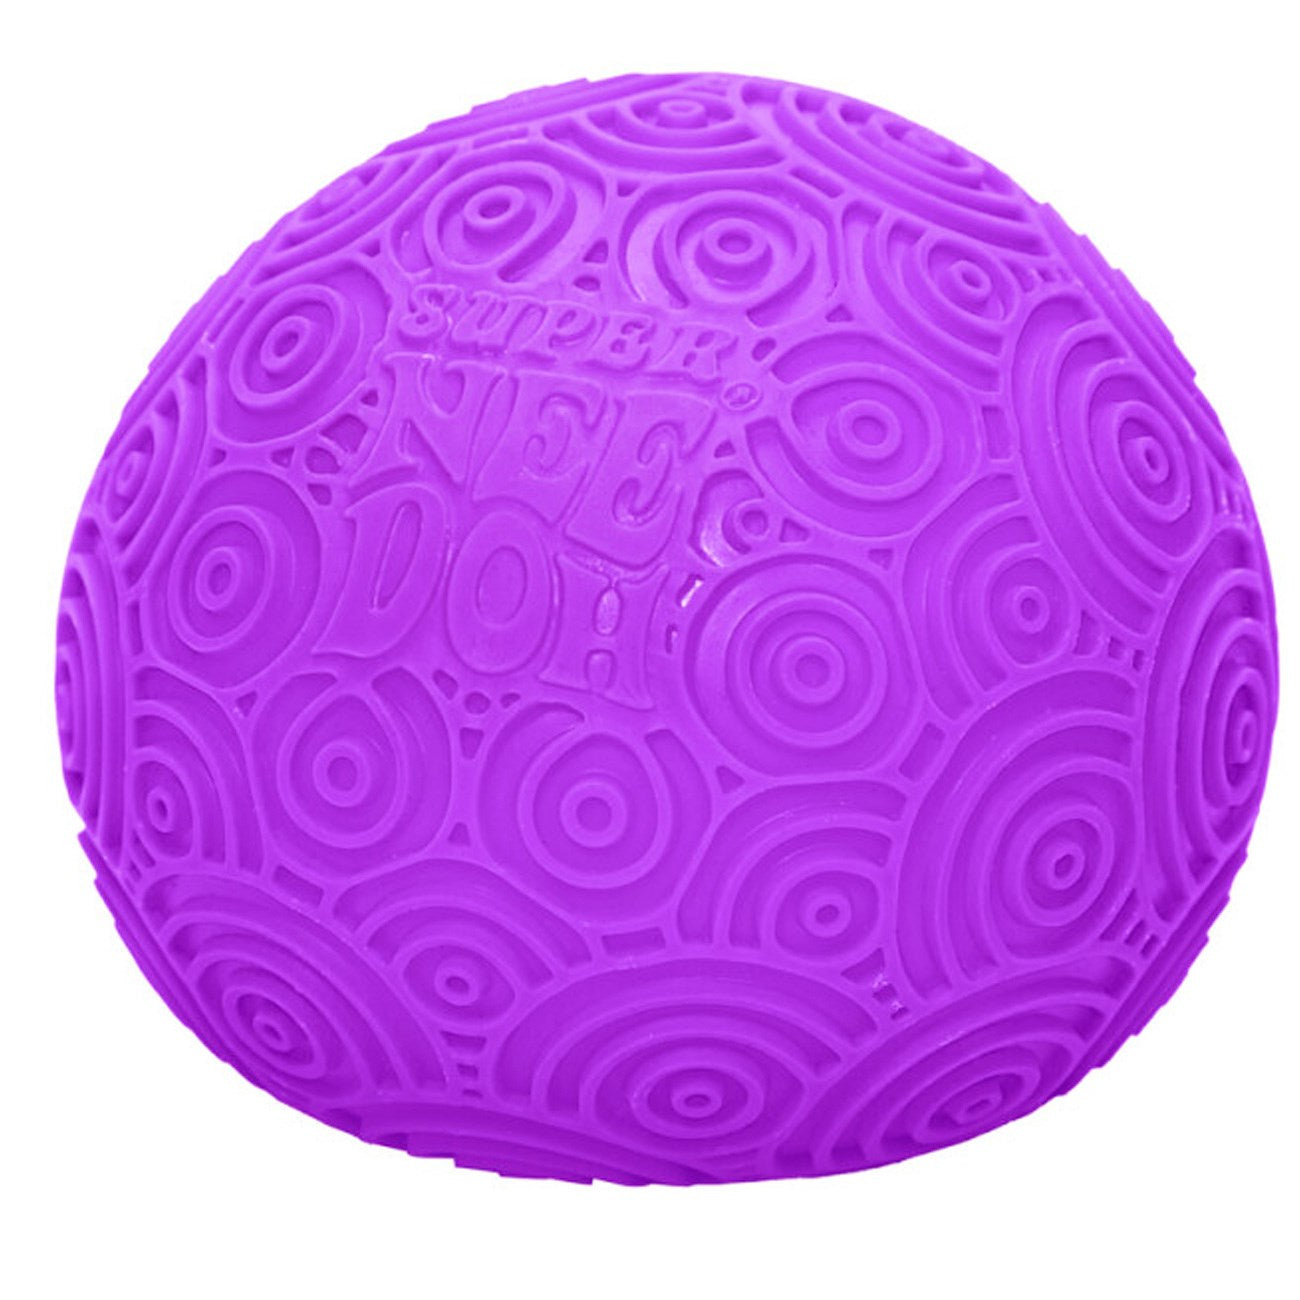 NeeDoh Super Ripple's Purple Swirled